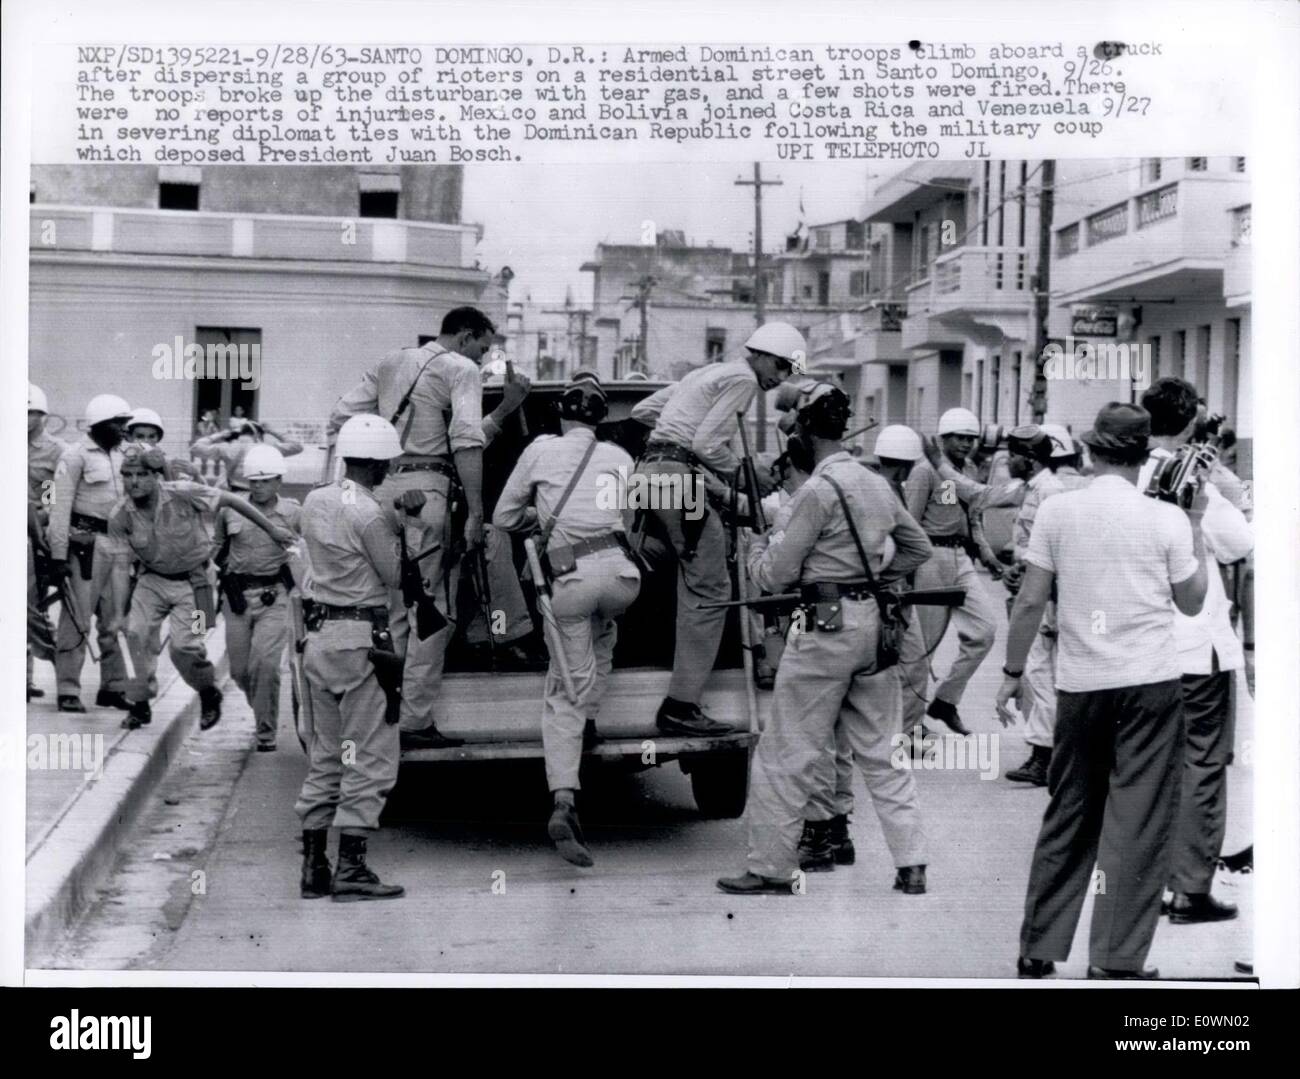 Au 28 septembre 1963 - Santo Domingo, D.R. : troupes dominicaine armés à bord d'un camion après avoir disparu un groupe d'émeutiers dans une rue résidentielle de Santo Domingo, 26/09. Les soldats brisèrent les distribue avec ses gaz lacrymogènes, et quelques coups de feu ont été tirés. Il n'y a pas eu de blessures,. Le Mexique et la Bolivie a rejoint le Costa Rica et le Venezuela 9/27 dans la rupture des liens avec la diplomate en République Dominicaine à la suite du coup d'État qui déposé le président Juan Bosch. Banque D'Images